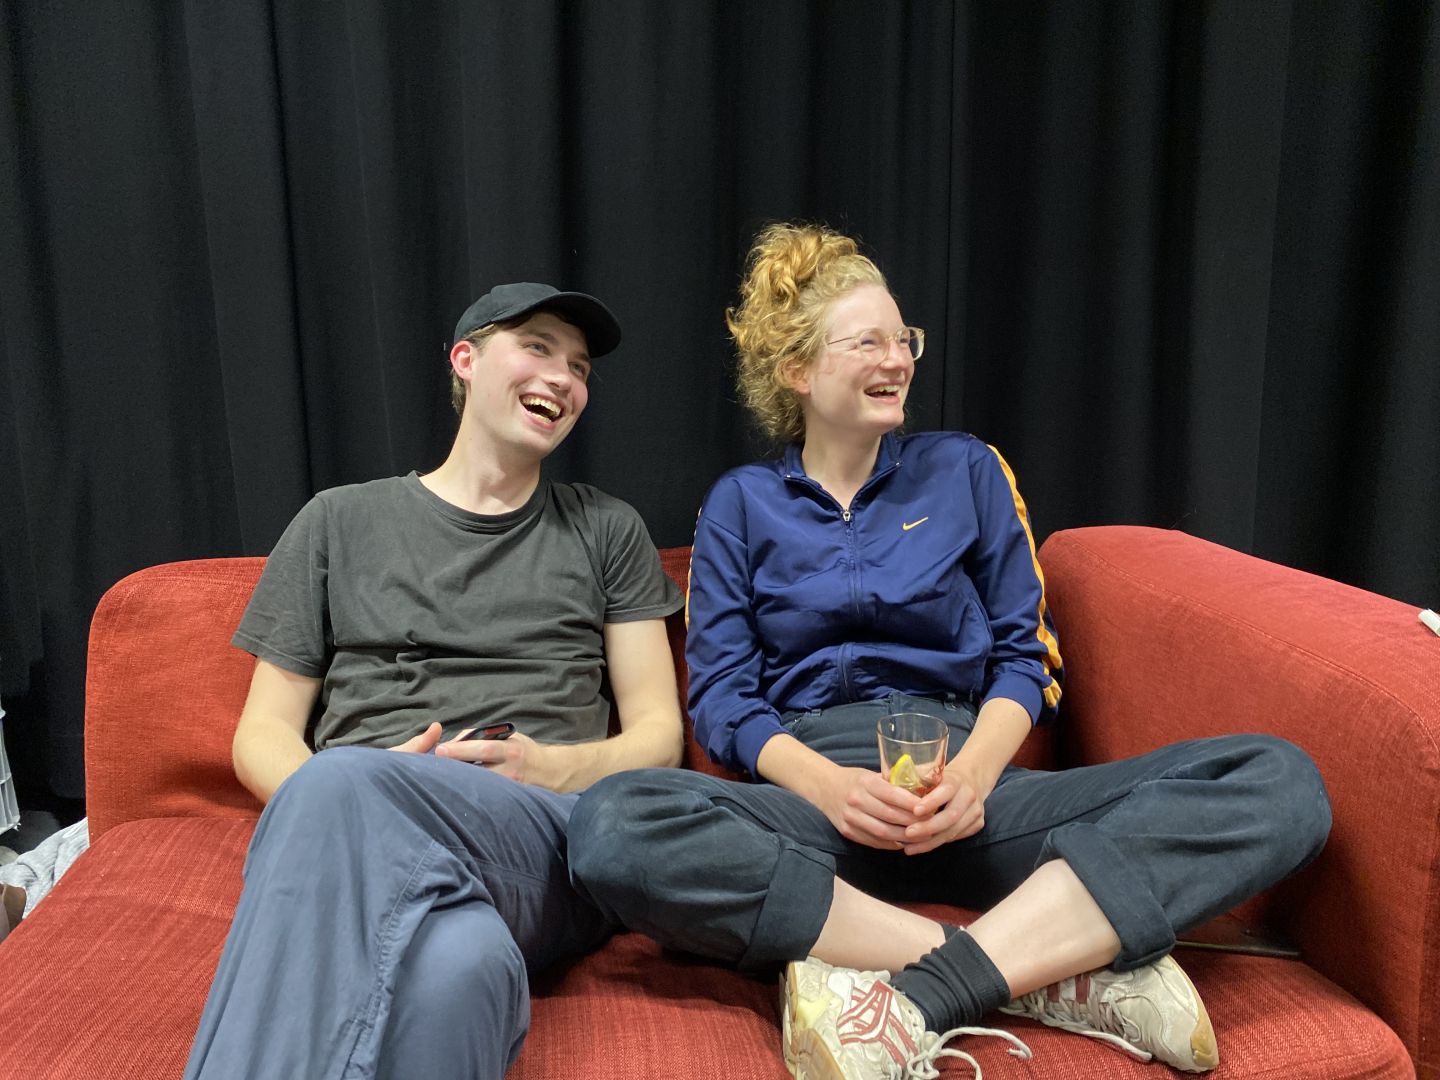 Liv Stapelfeldt und Janek Maudrich sitzen auf einem roten Sofa